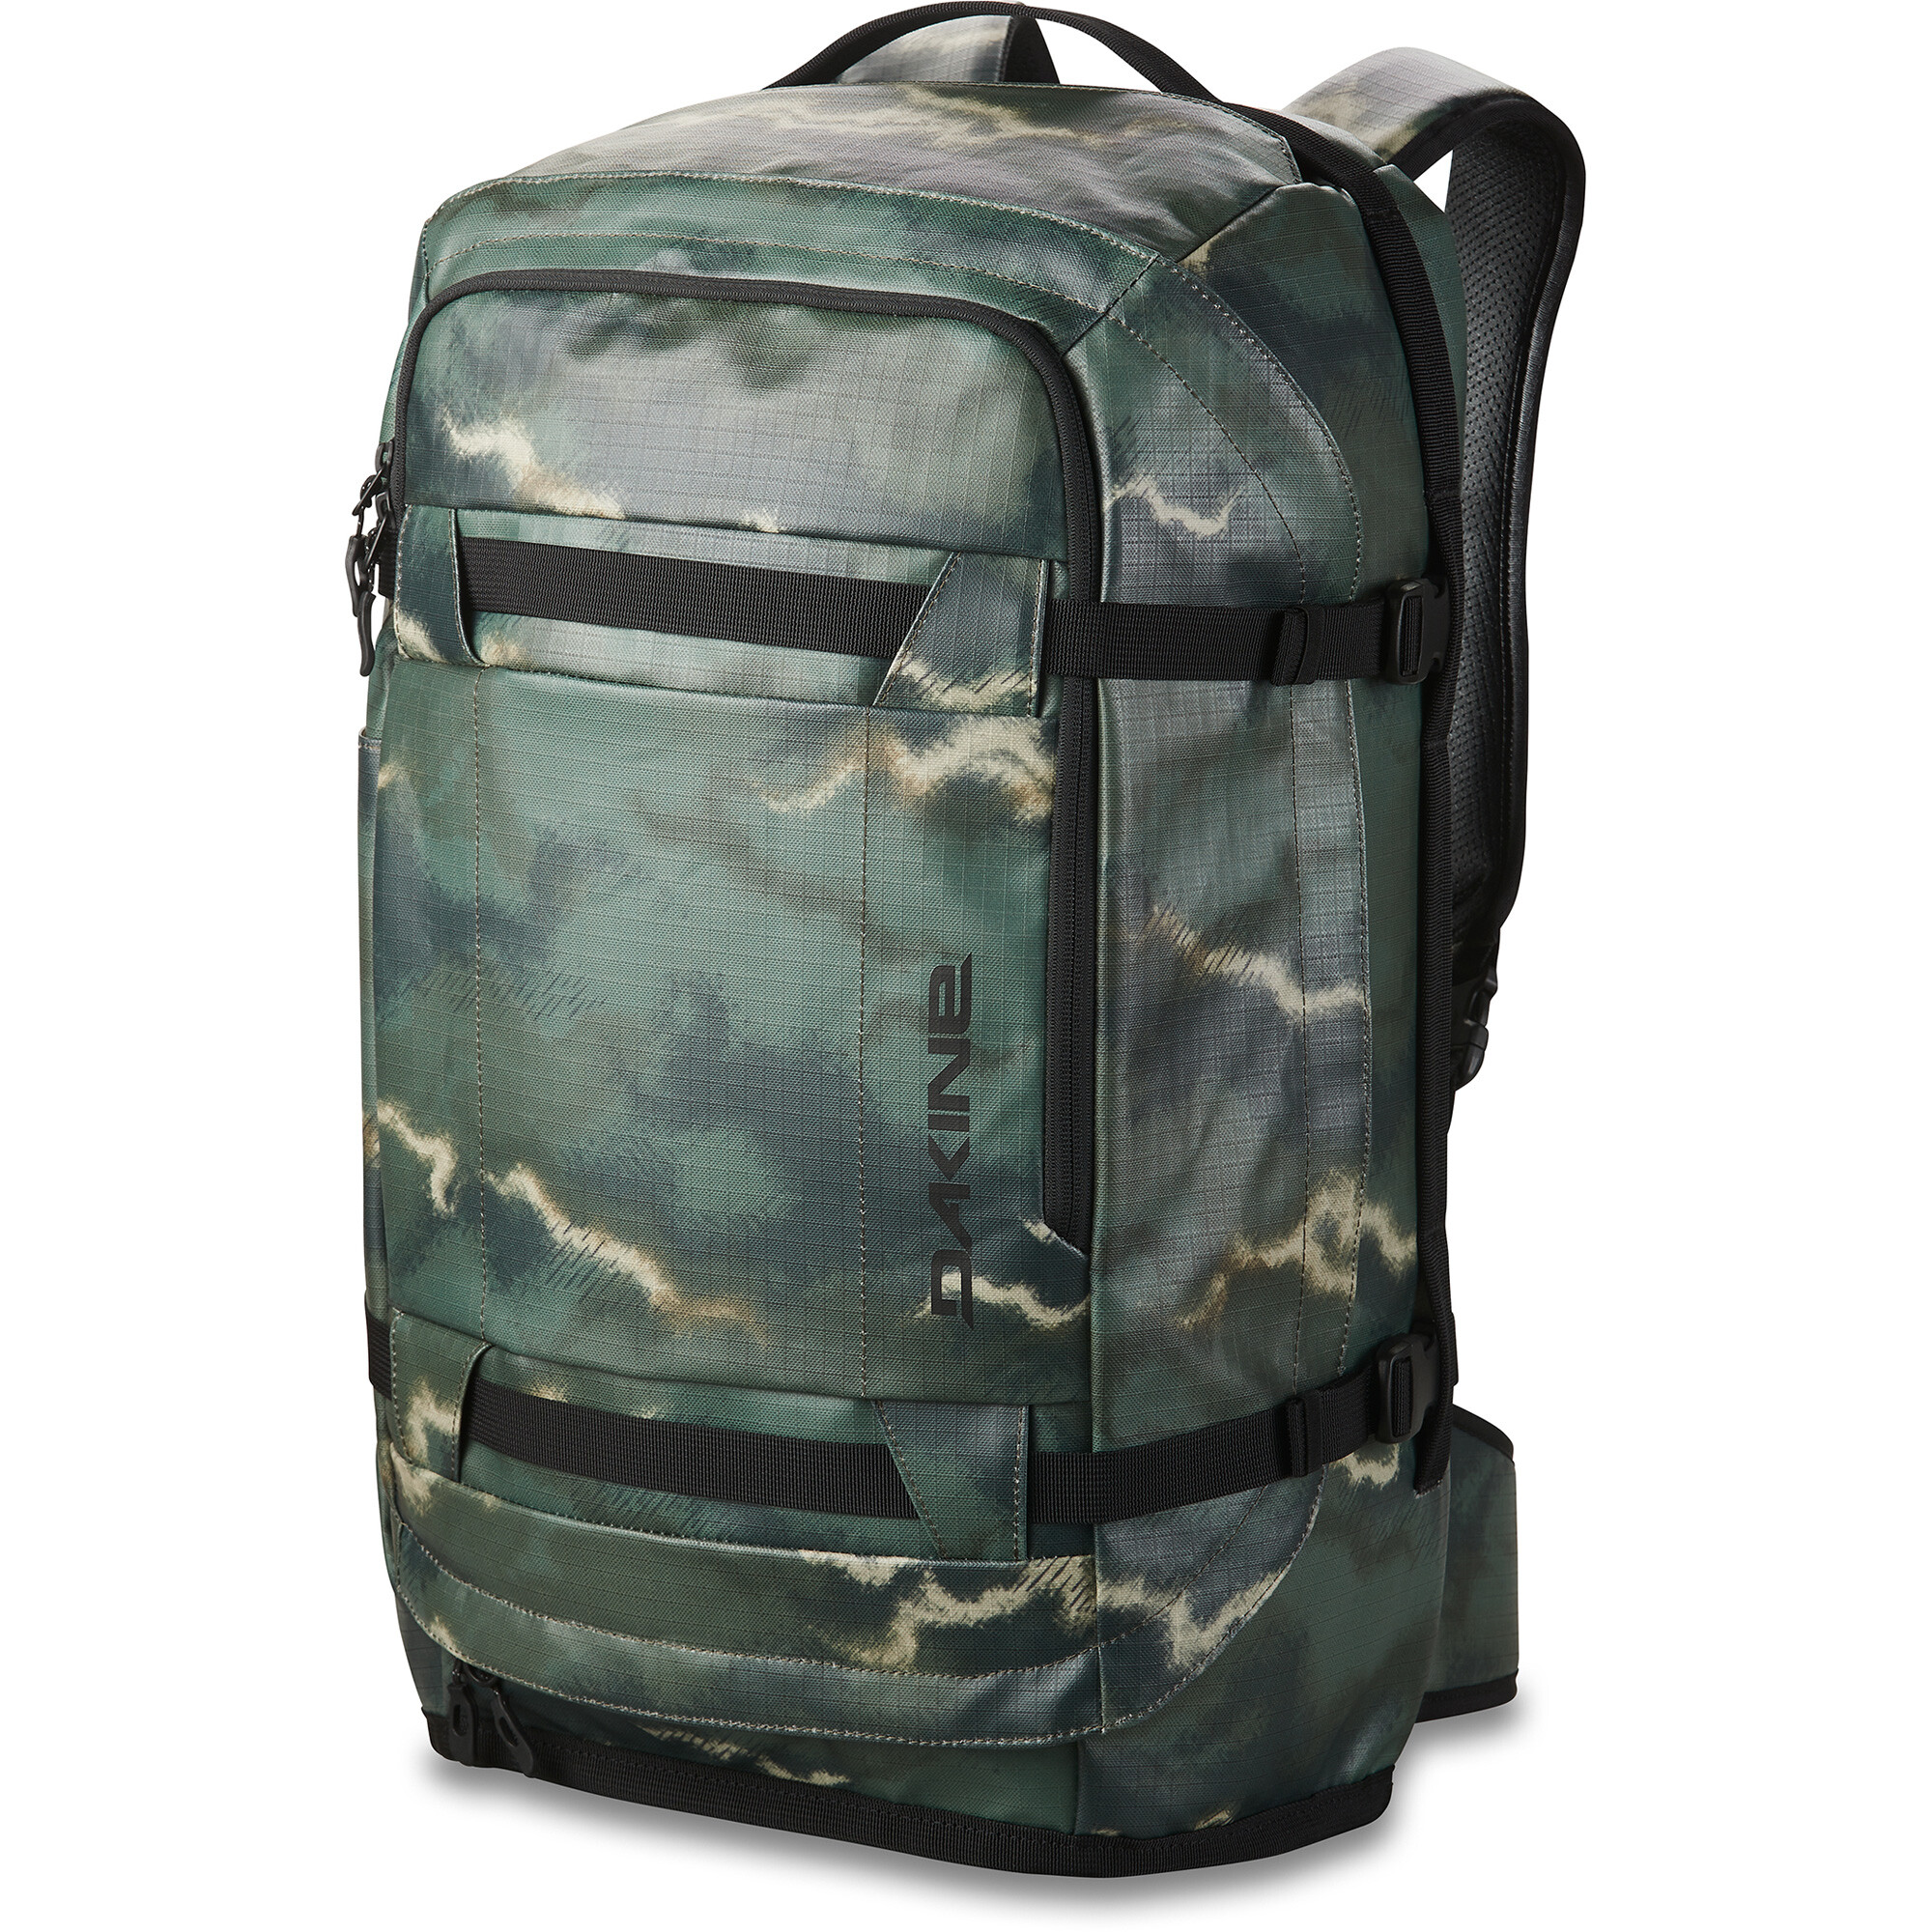 Ranger Travel 45L Backpack